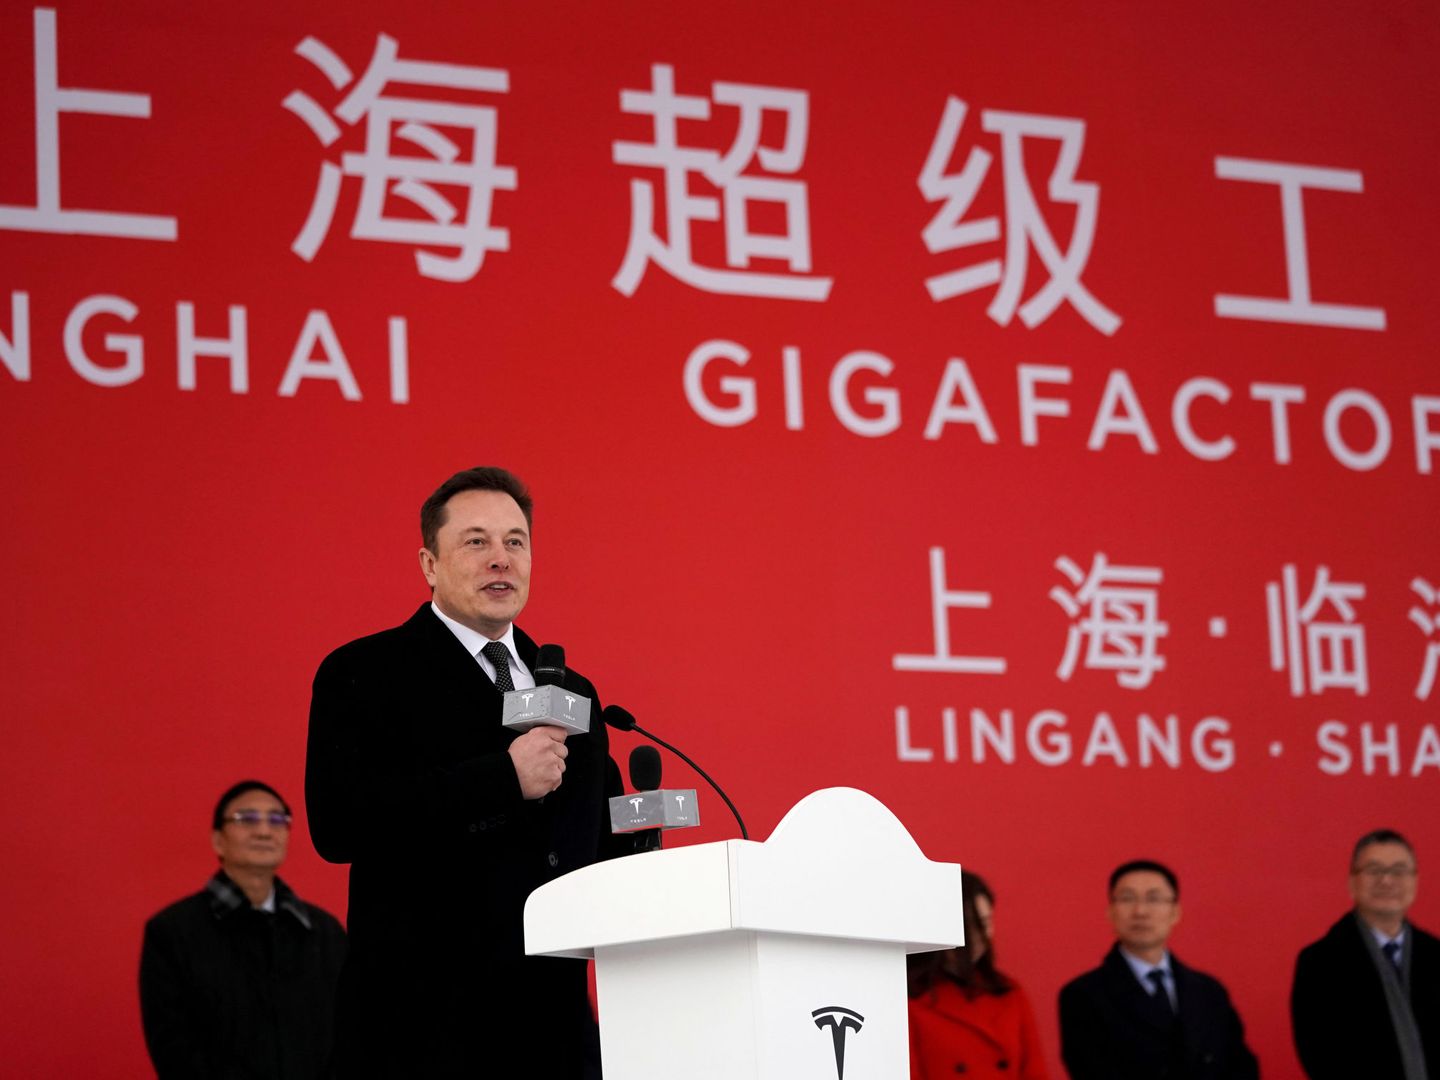 El CEO de Tesla, Elon Musk, en un acto en la 'Gigafactory' de Shangái. (Reuters)